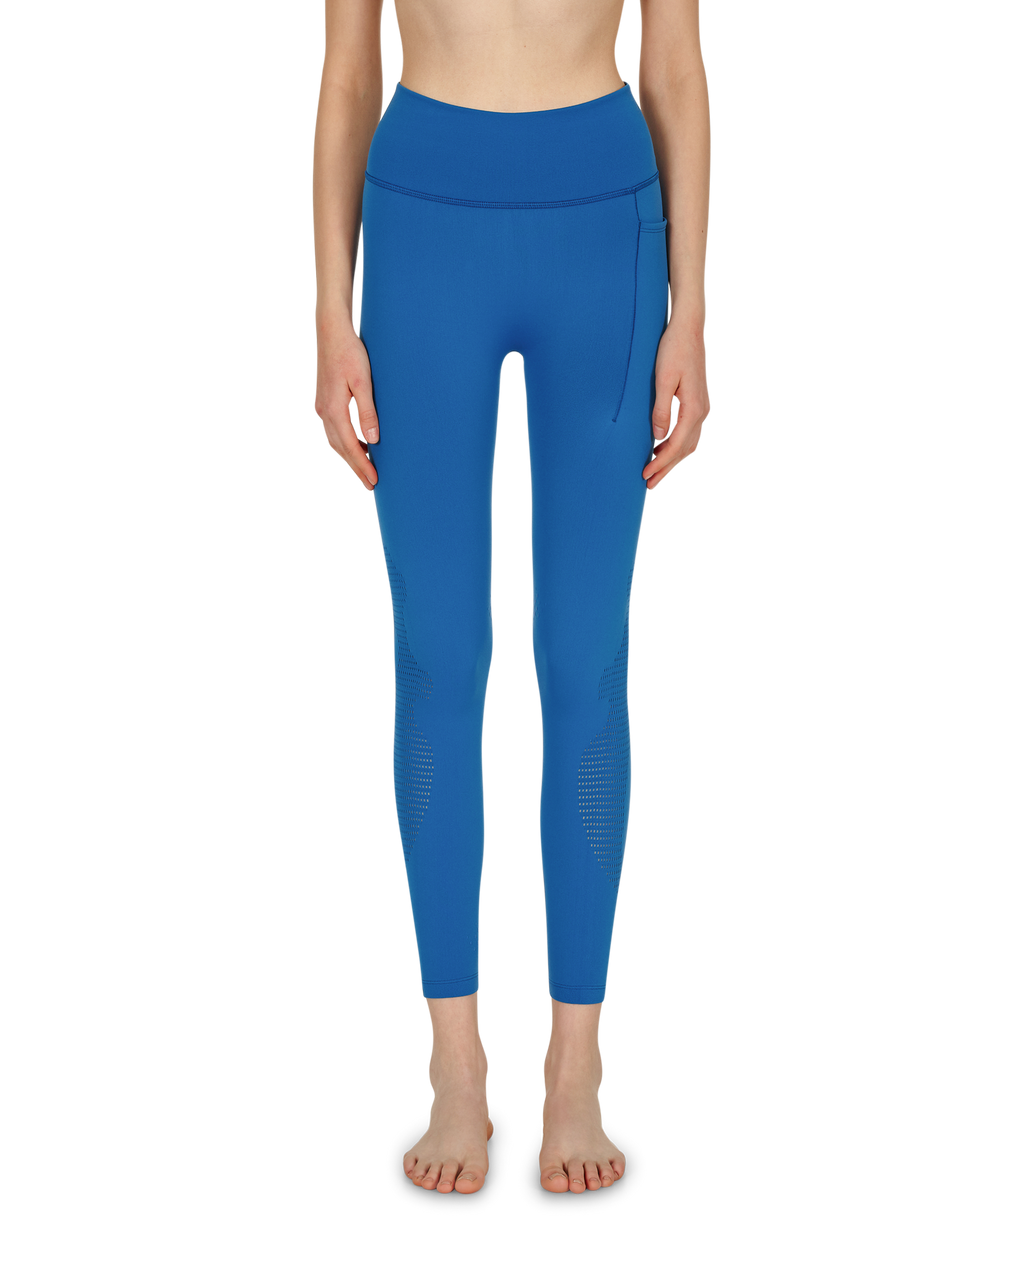 Chelsea Legging Set - Blue